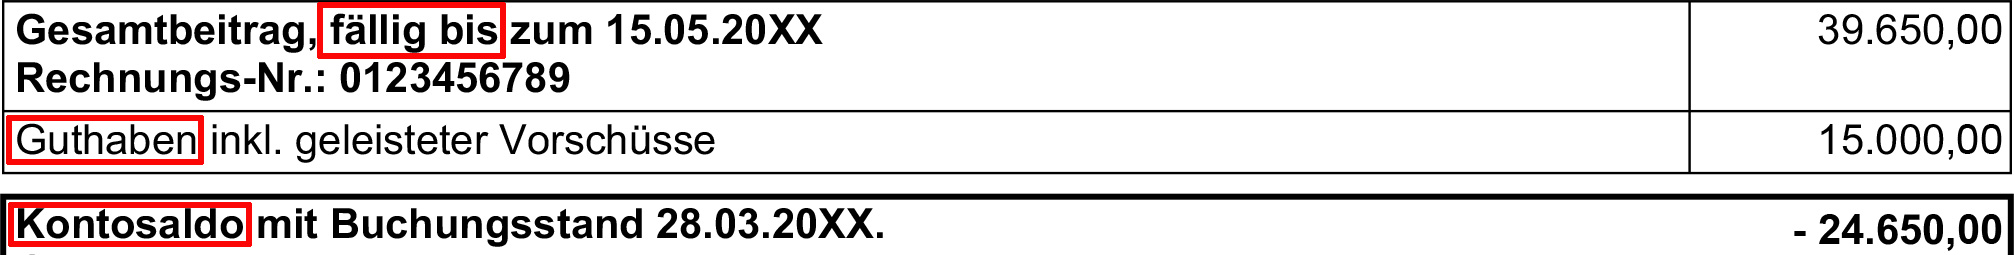 Ausschnitt eines BGW-Beitragsbescheids: In einer Tabelle sind die Begriffe "fällig bis", "Guthaben" und "Kontosaldo" rot umrandet.